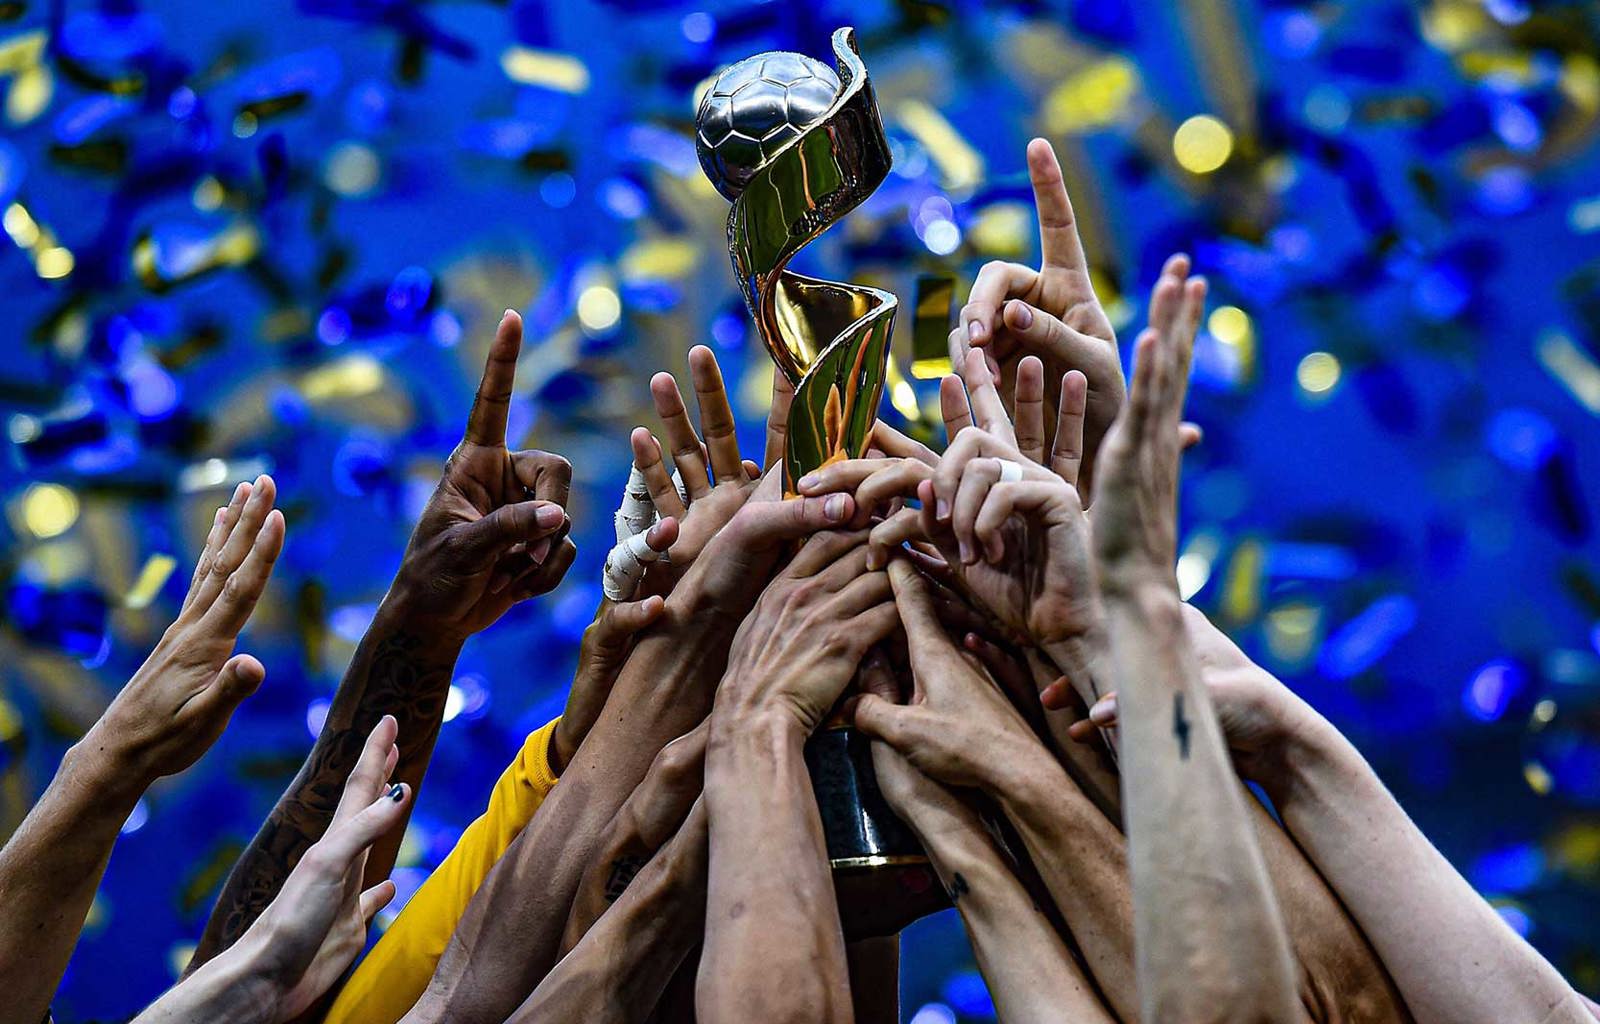 https://fifpro.org/media/oejj3zgl/women-s-world-cup-trophy.jpg?rxy=0.49148372941504642,0.15645425578270816&width=1600&height=1024&rnd=133395017416430000